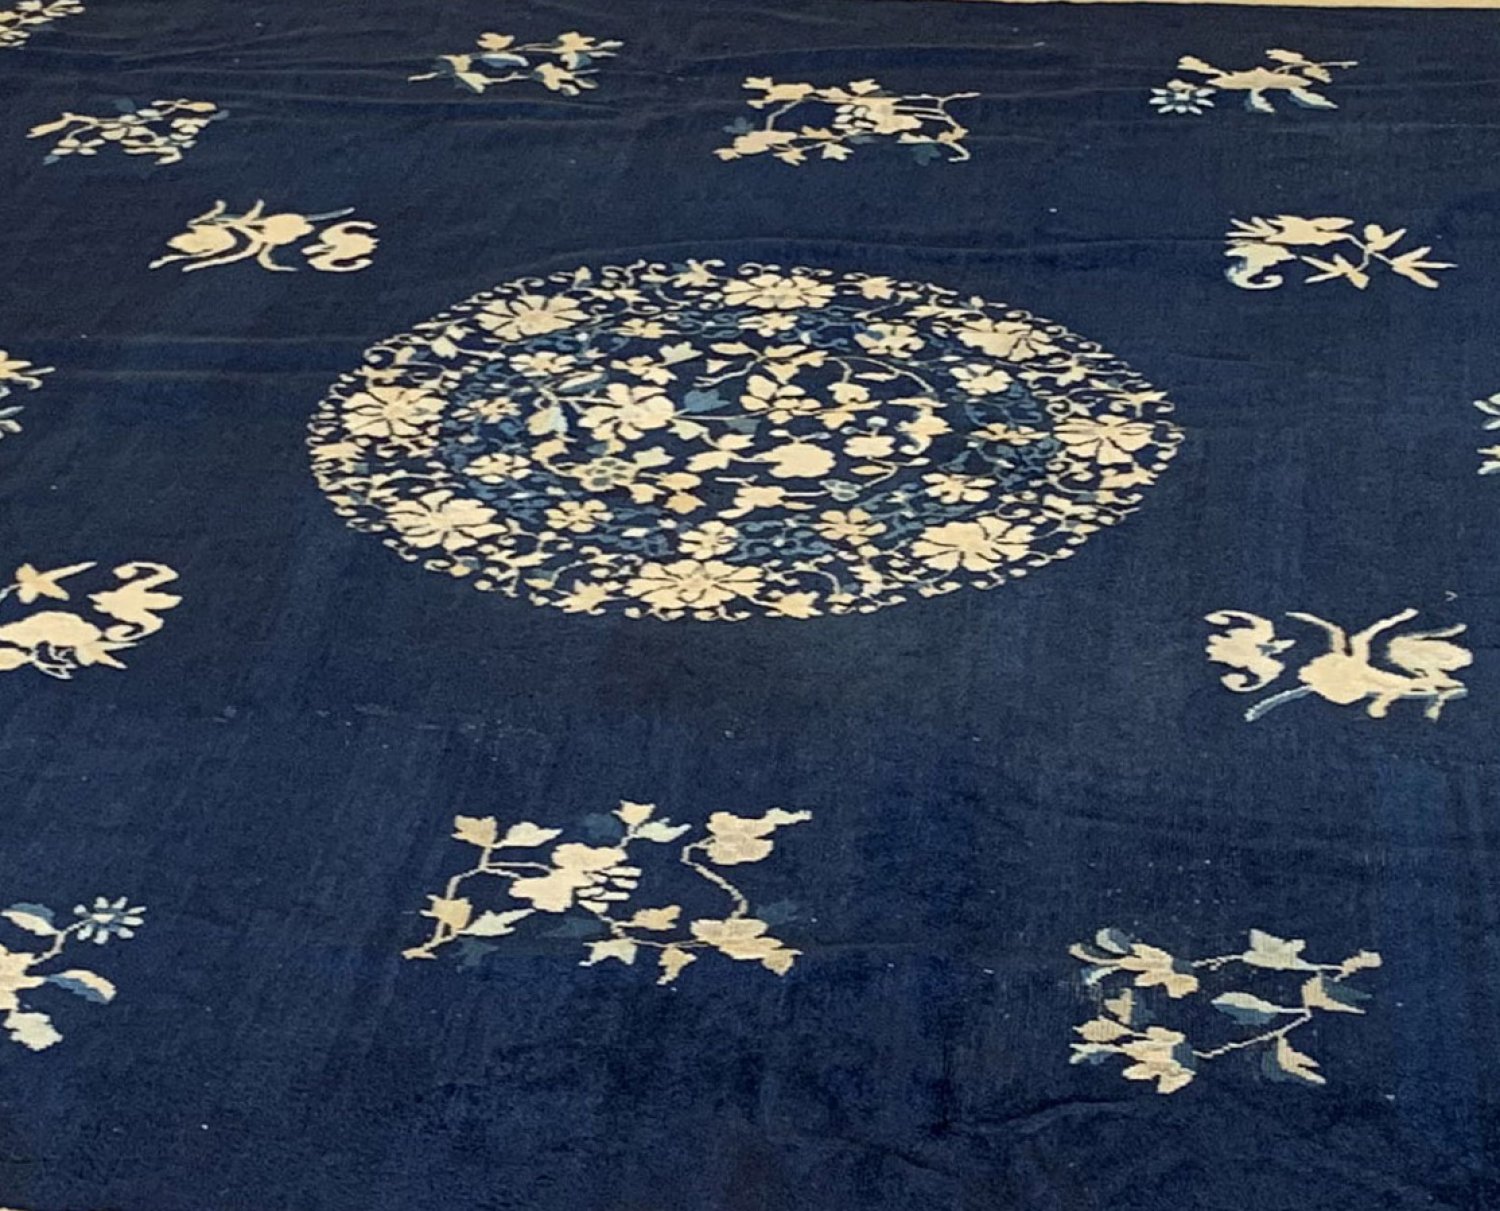 Peking Carpet from eastern China